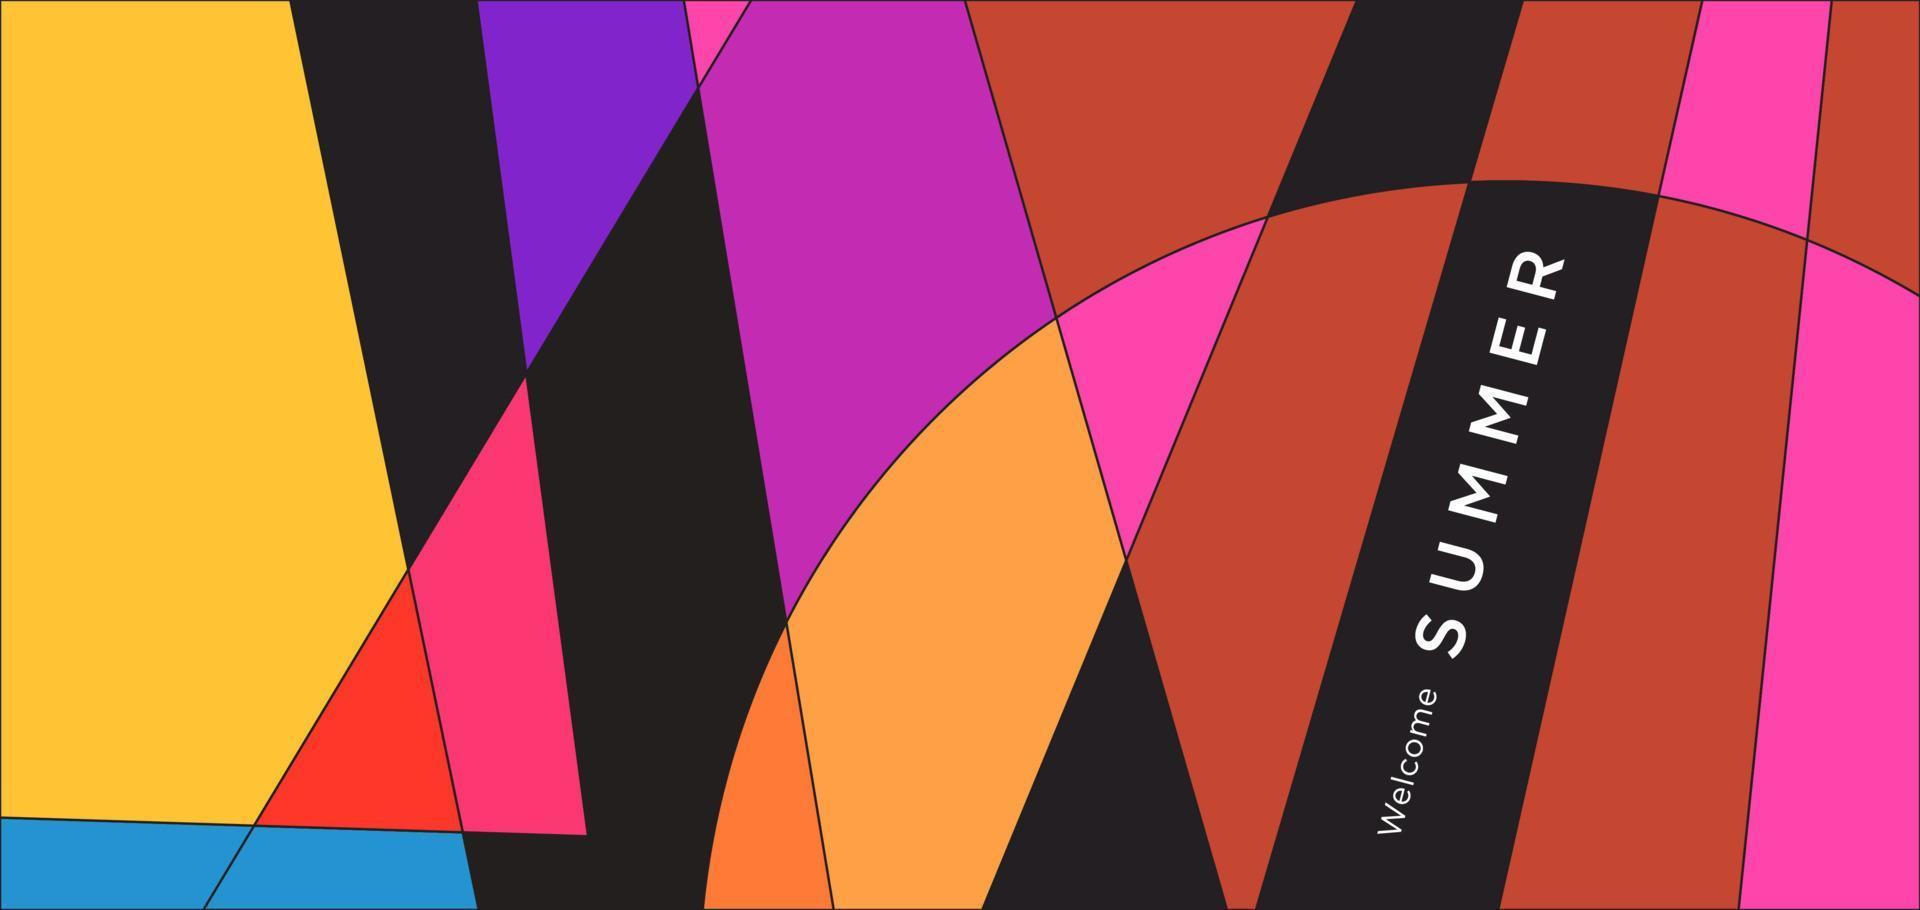 fondo geométrico abstracto colorido para banner de verano vector